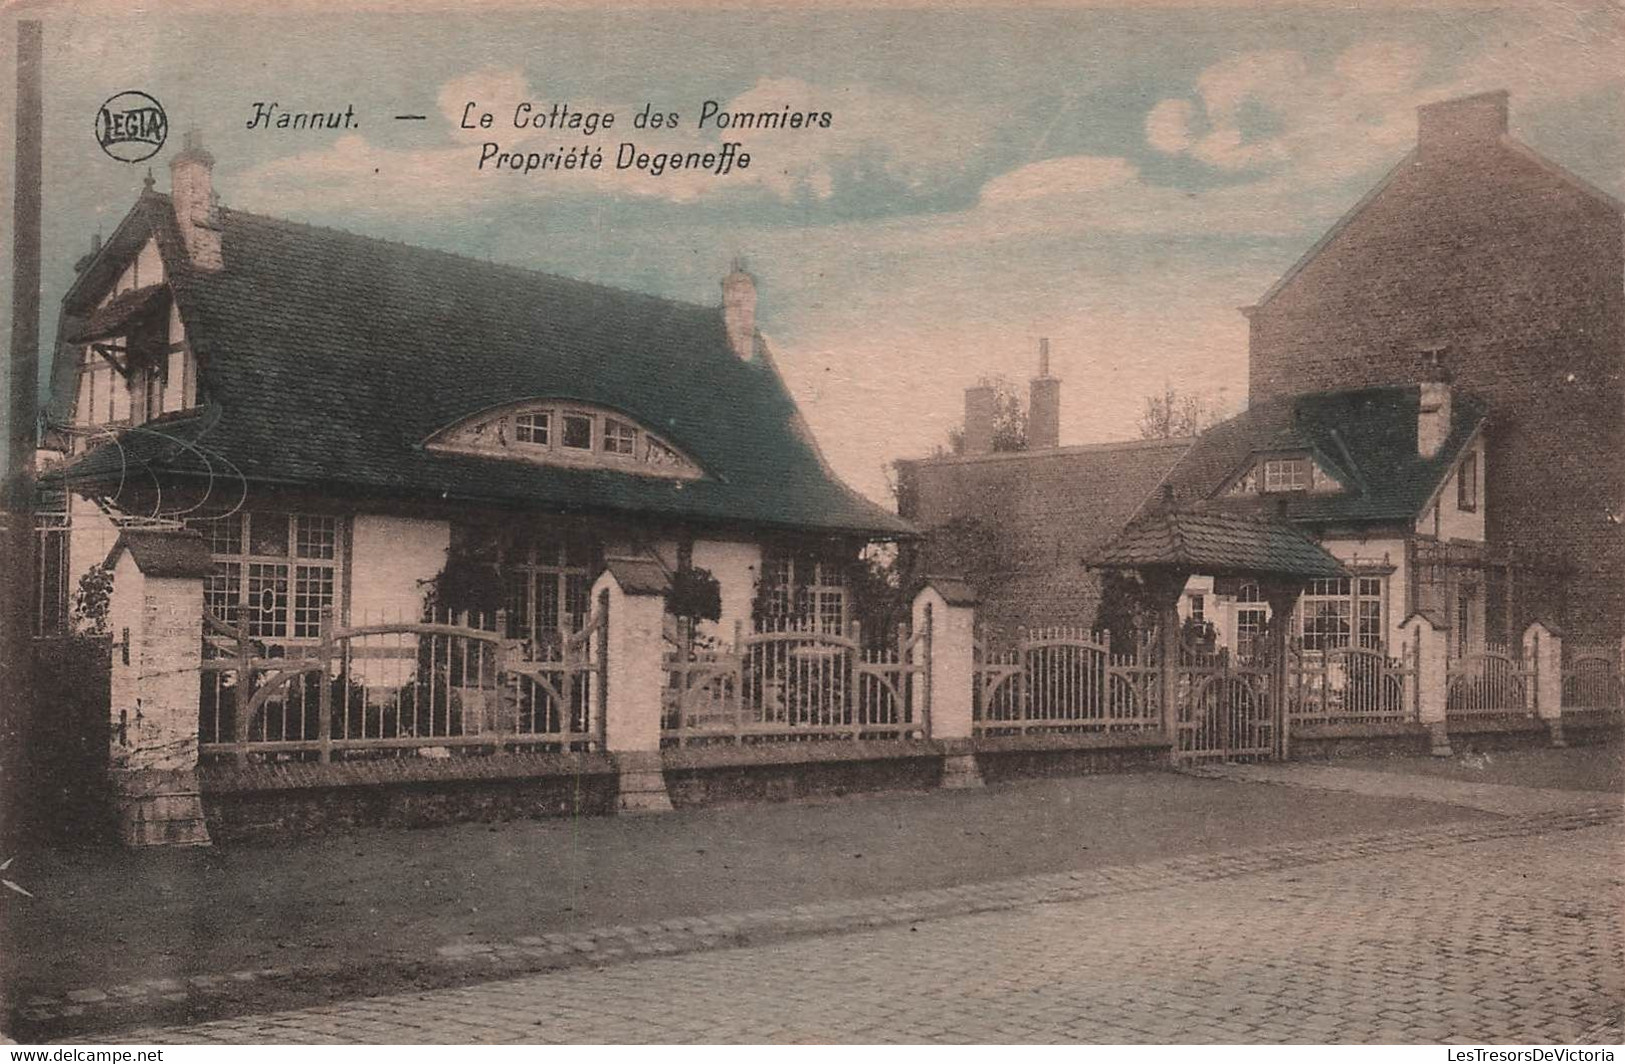 BELGIQUE - Hannut - Le Cottage Des Pommiers - Propriété Degeneffe - Colorisé - Legia - Carte Postale Ancienne - Hannuit